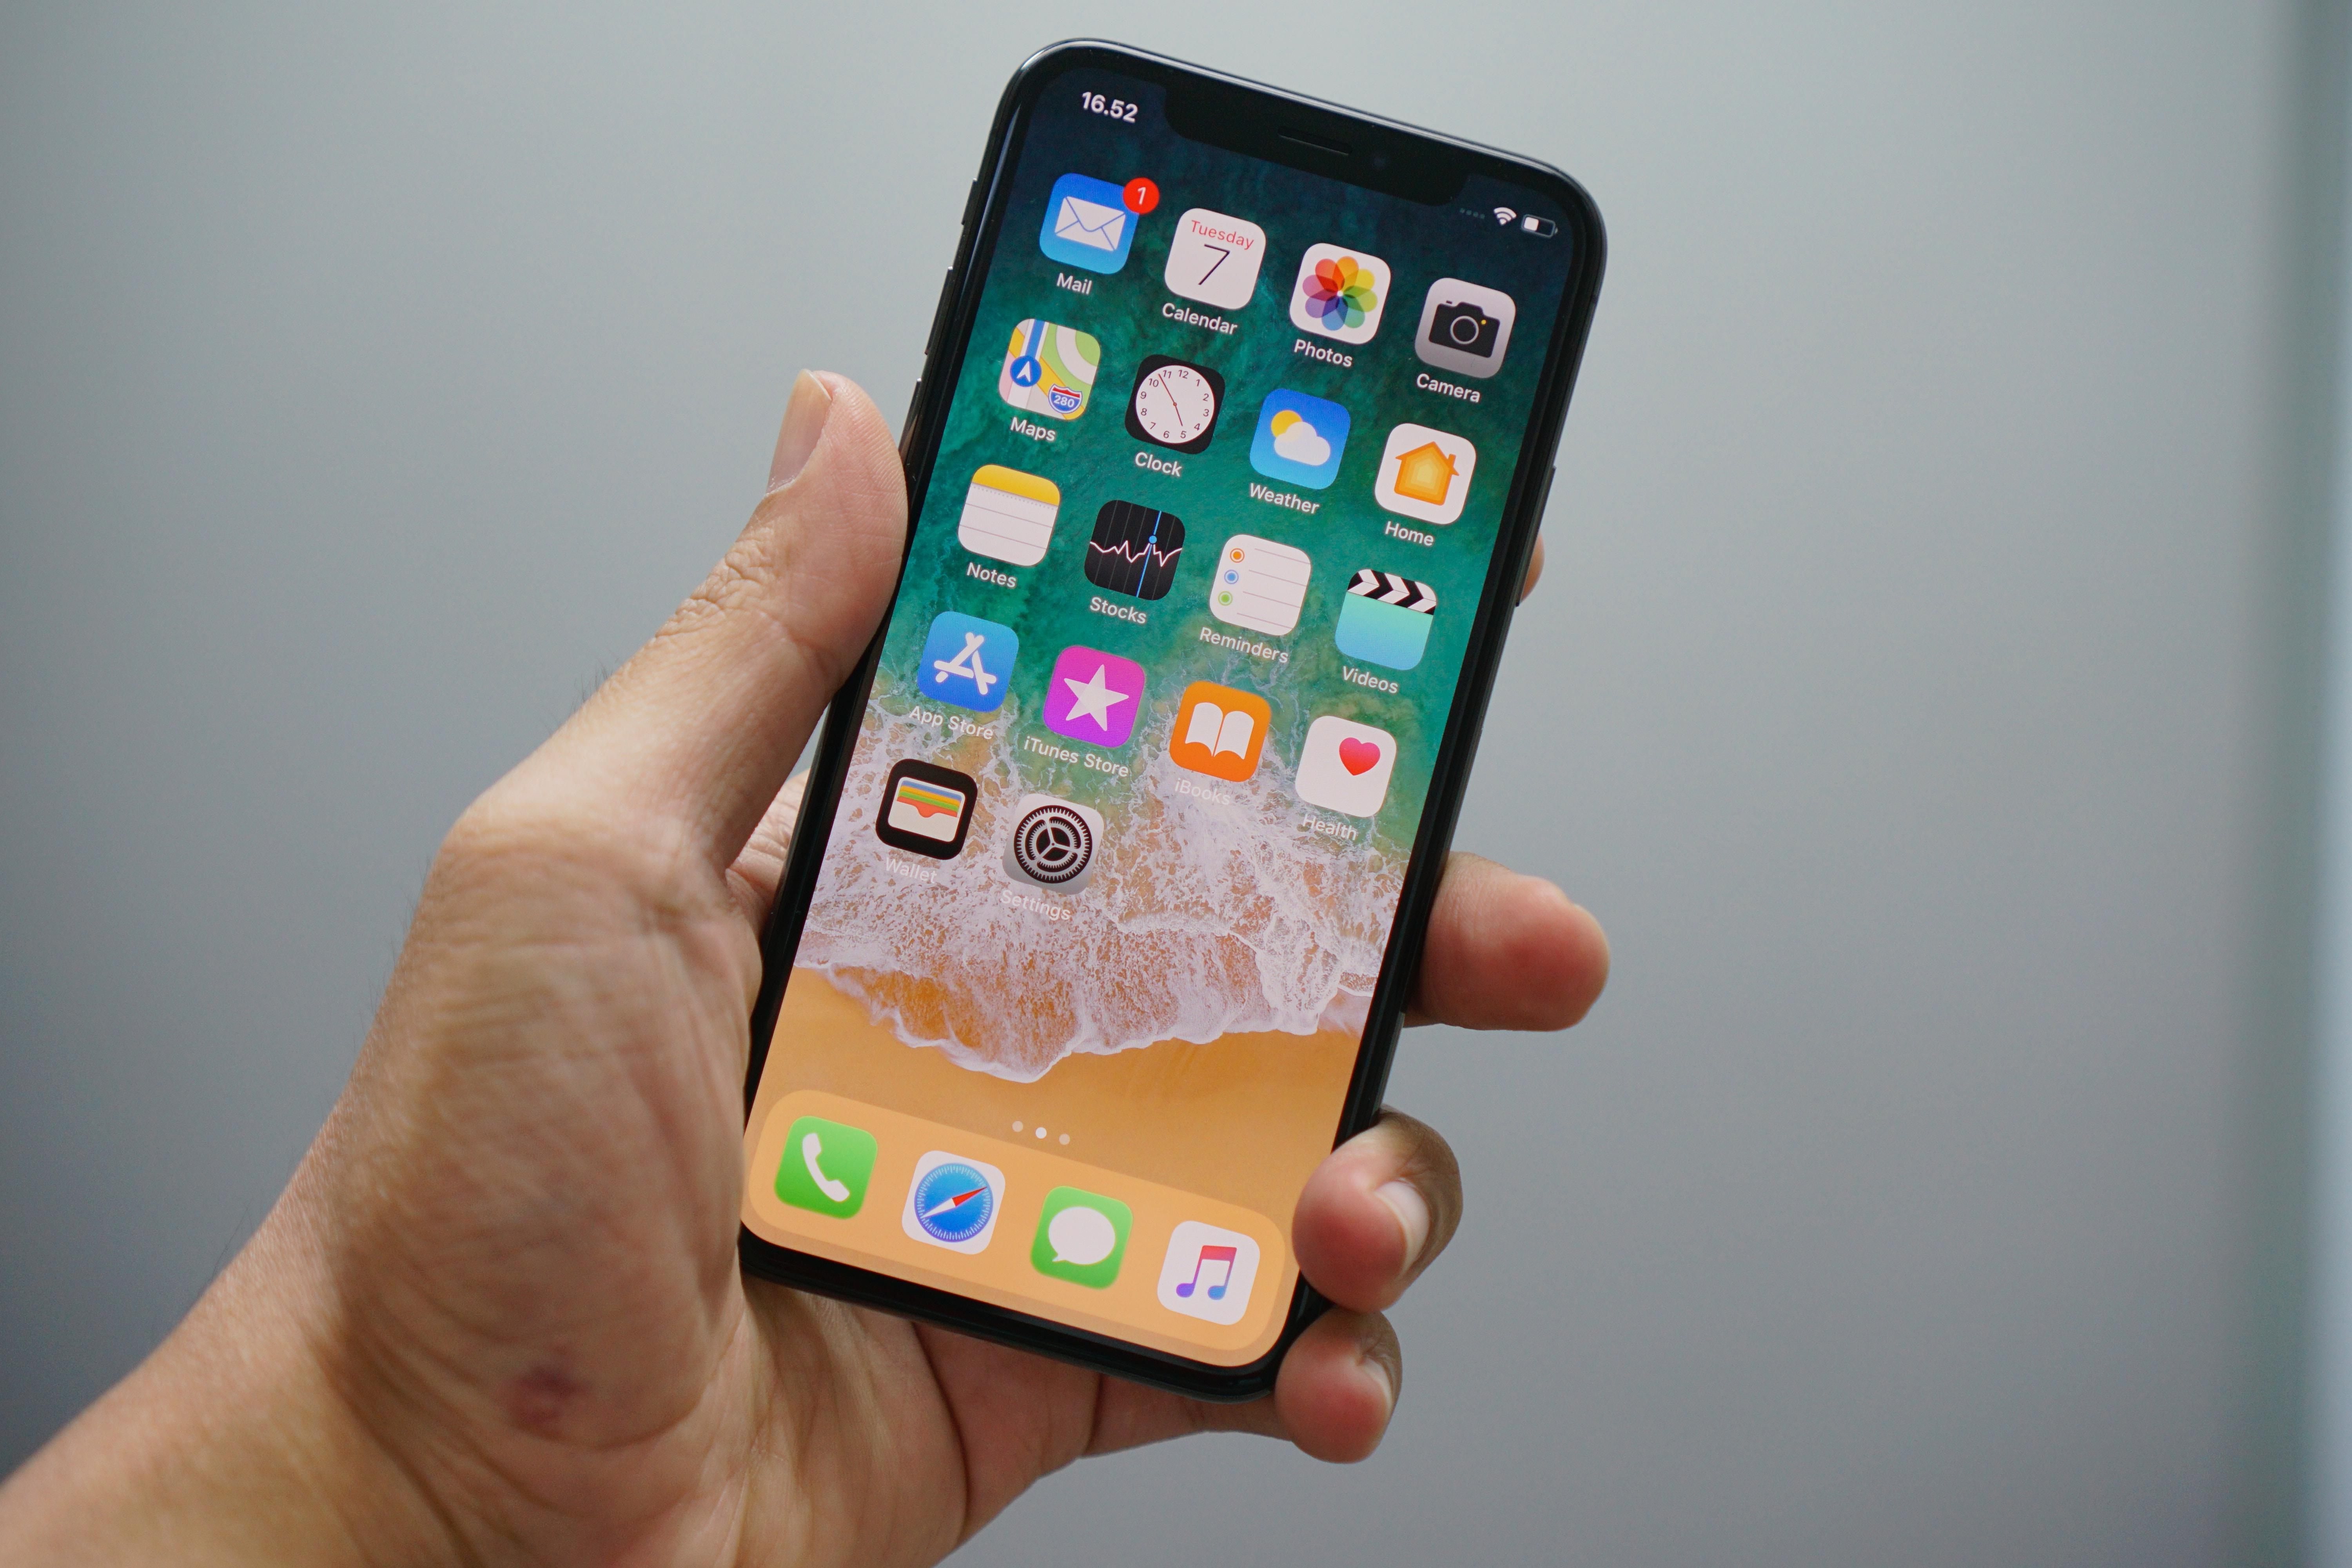 ФБР удалось взломать iPhone без помощи Apple: что об этом известно